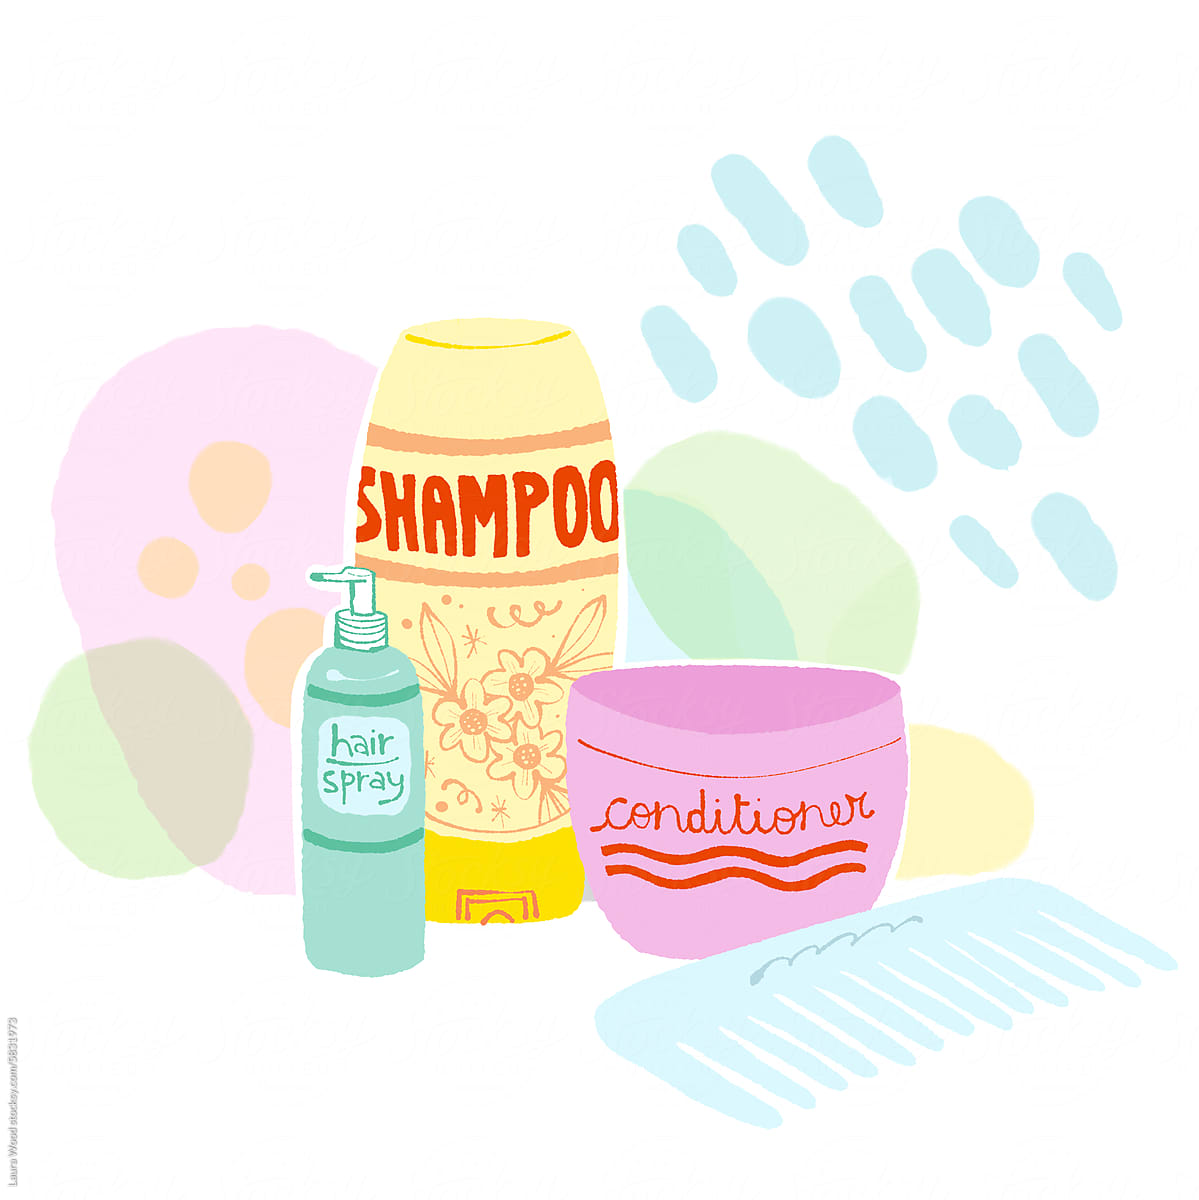 Bathroom products - Hair